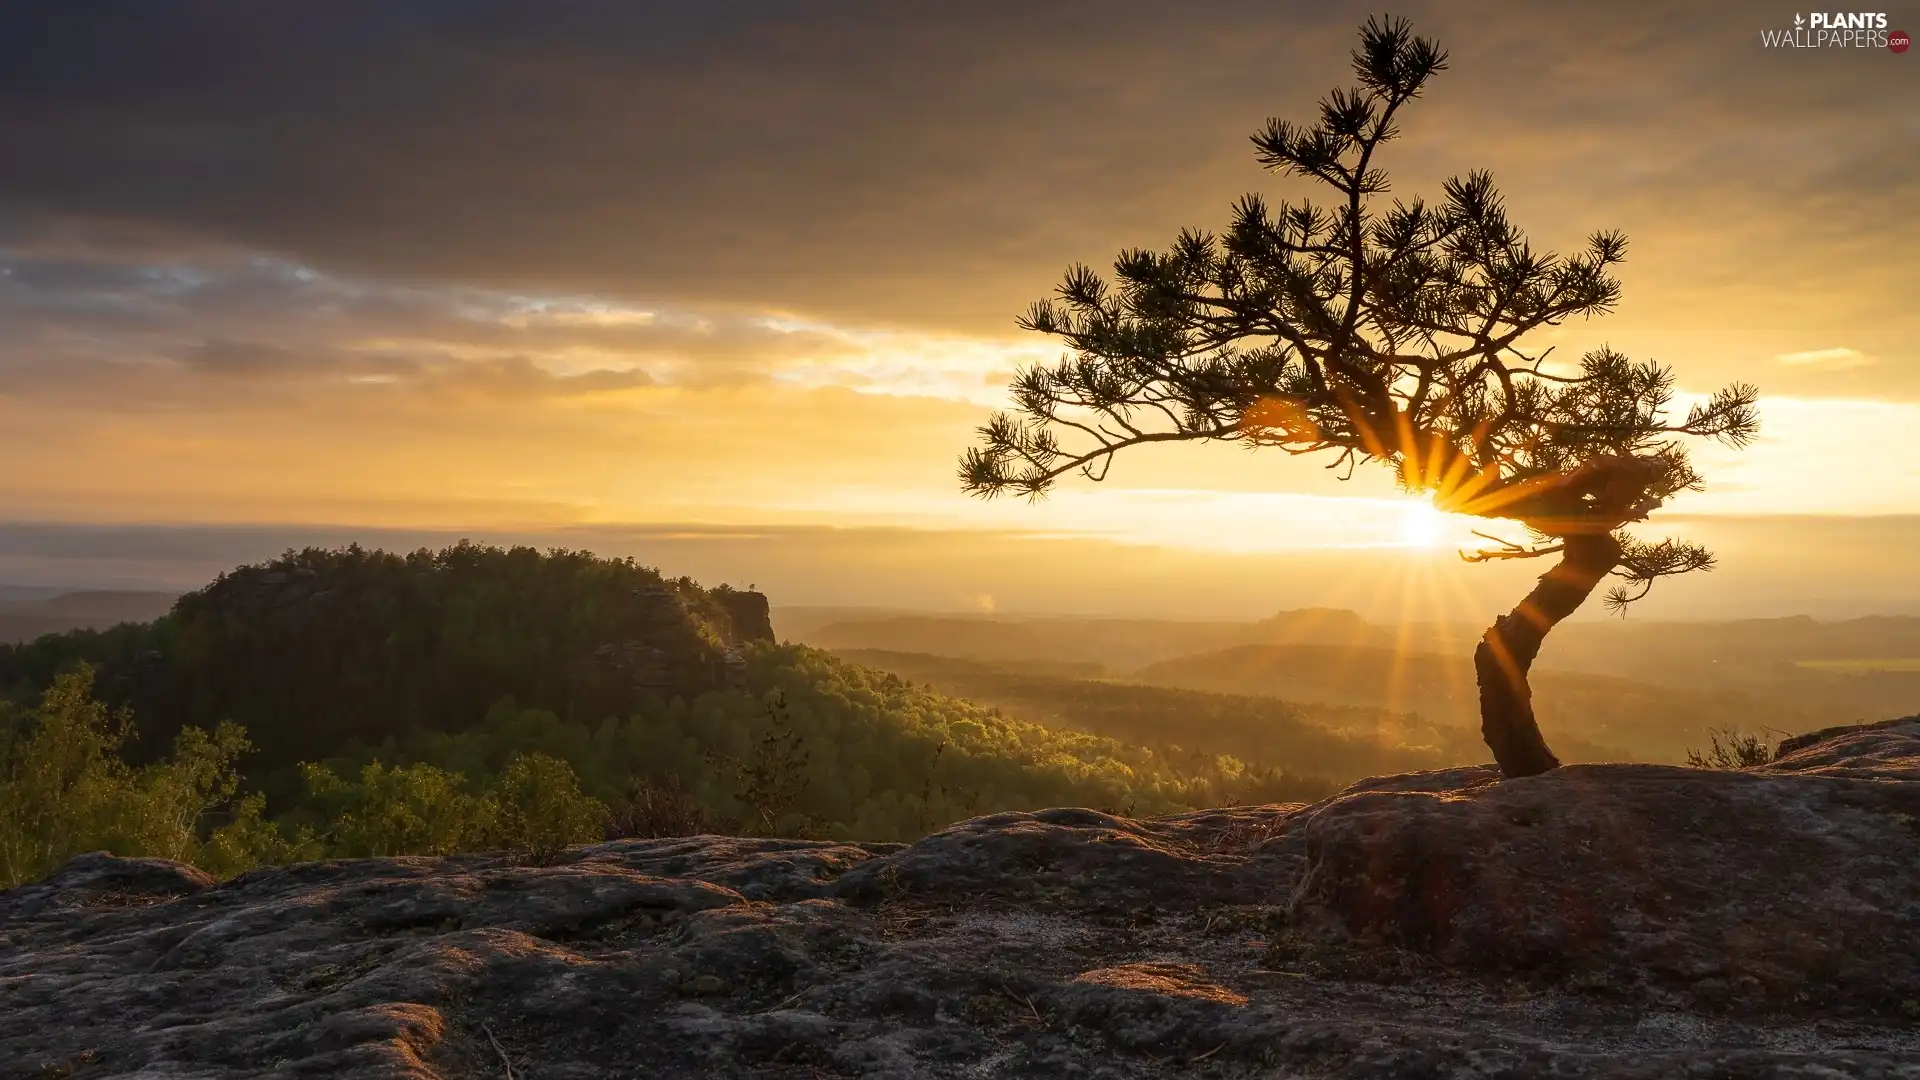 Děčínská vrchovina, pine, clouds, trees, Sunrise, Saxon Switzerland National Park, Germany, viewes